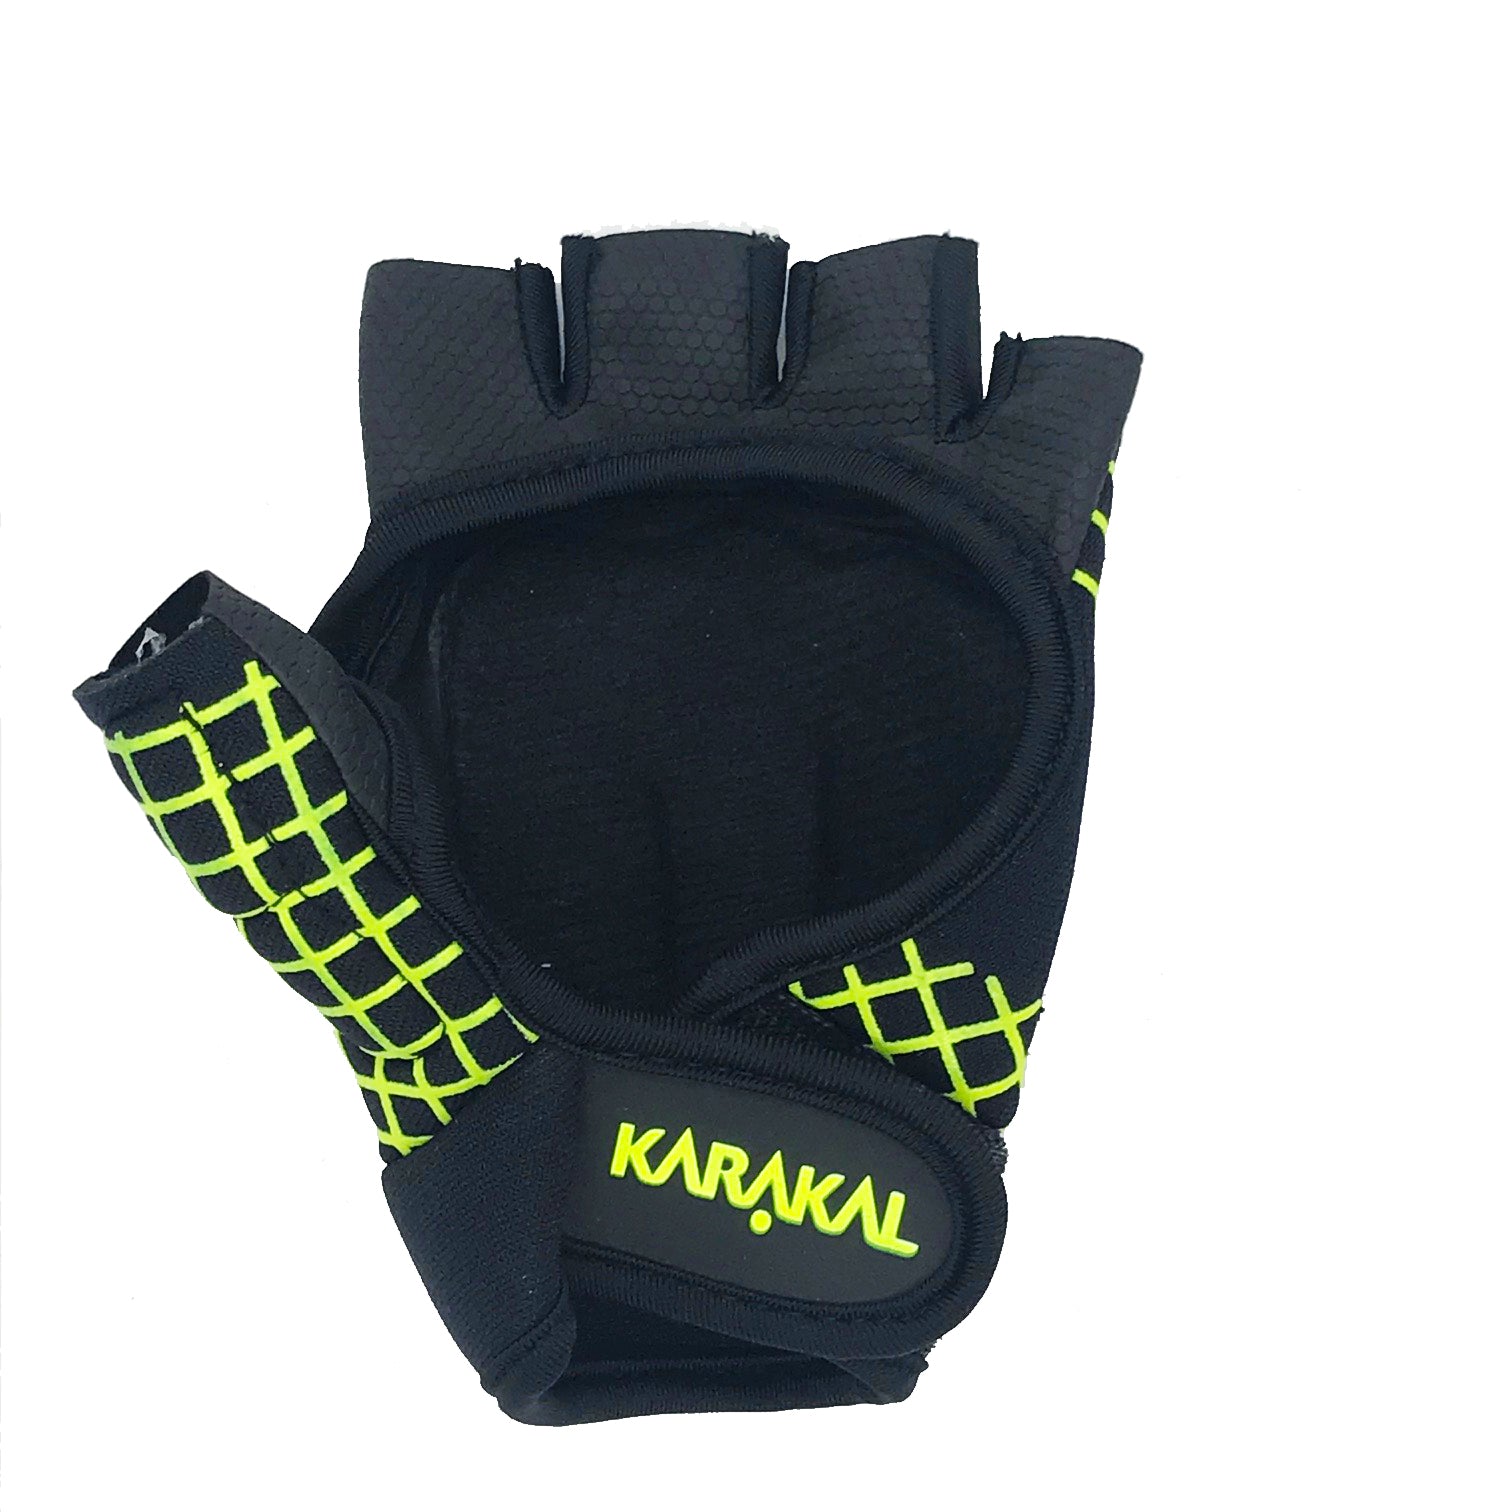 Karakal Pro Hurling Glove Left Hand